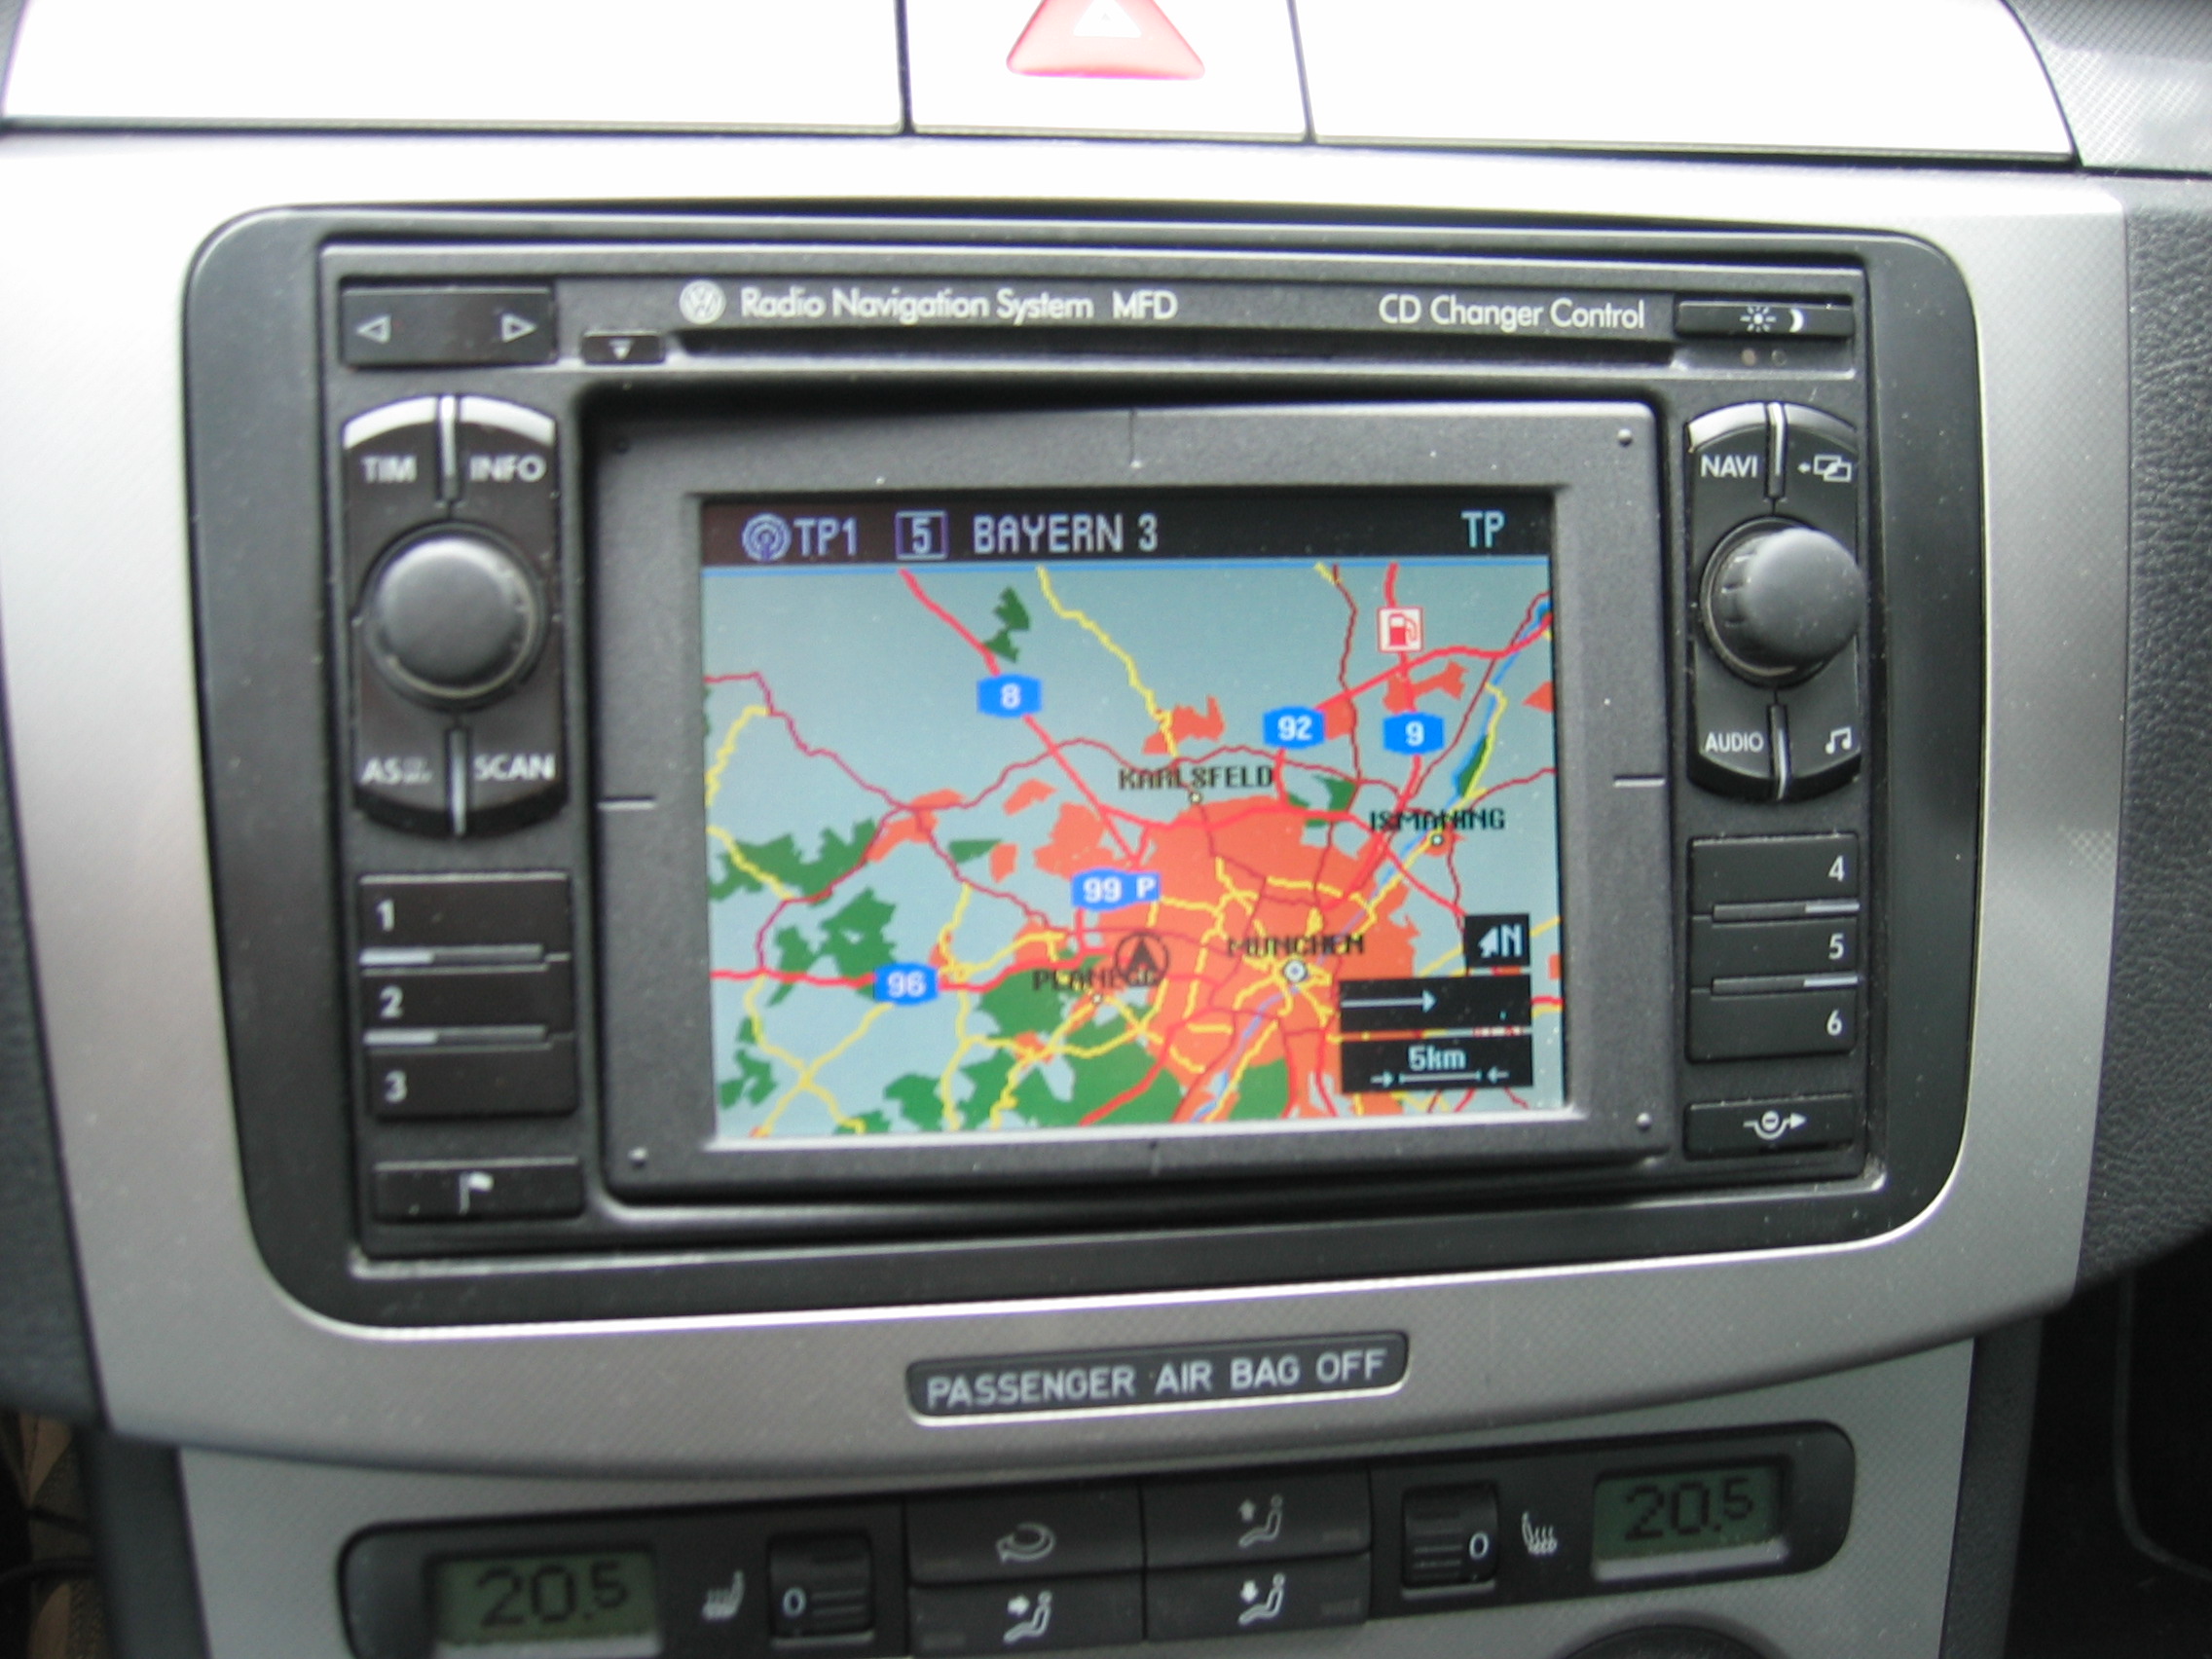 VW Radio Navigation System MFD + CD Wechsler + AUX in